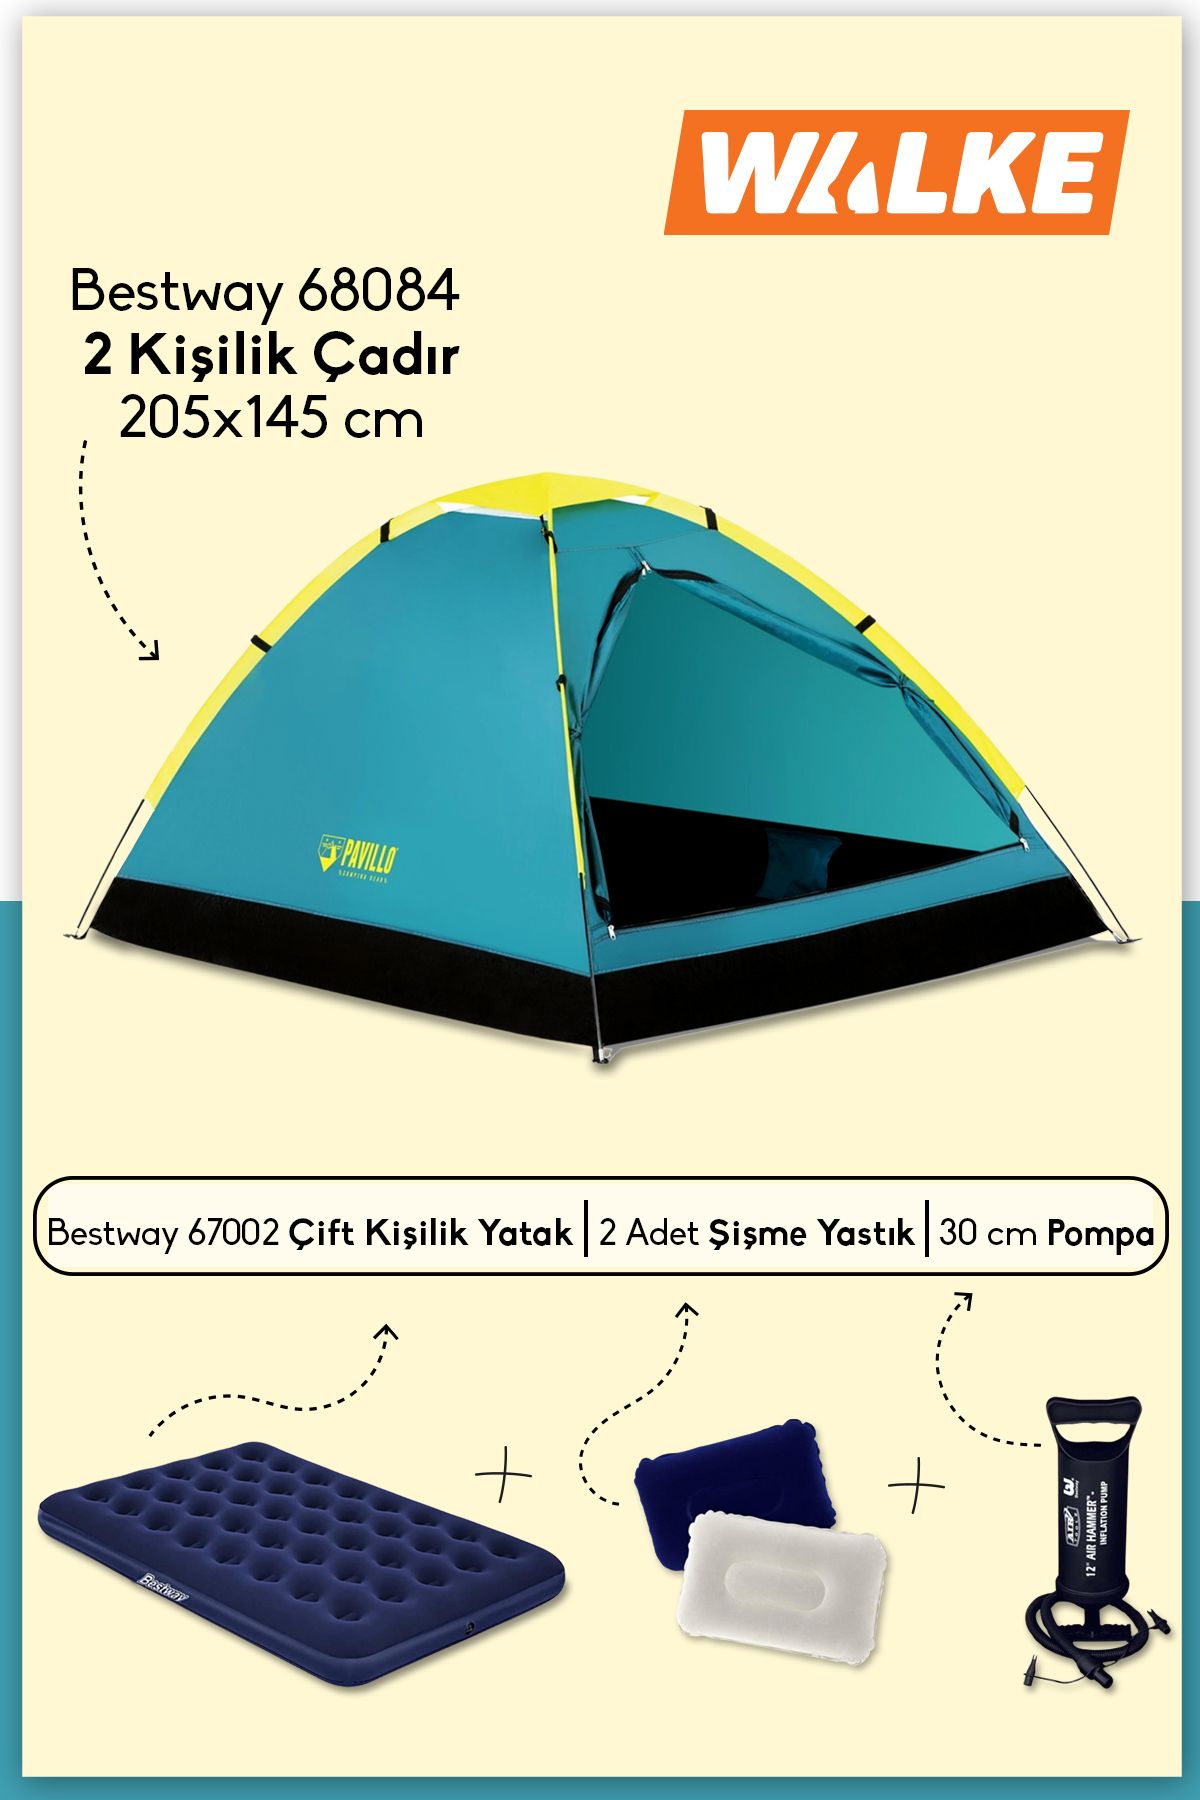 Walke Lüks Pavillo Kamp Seti 2 Kişilik Çadır + Çift Kişilik Şişme Yatak + Pompa + 2 Yastık